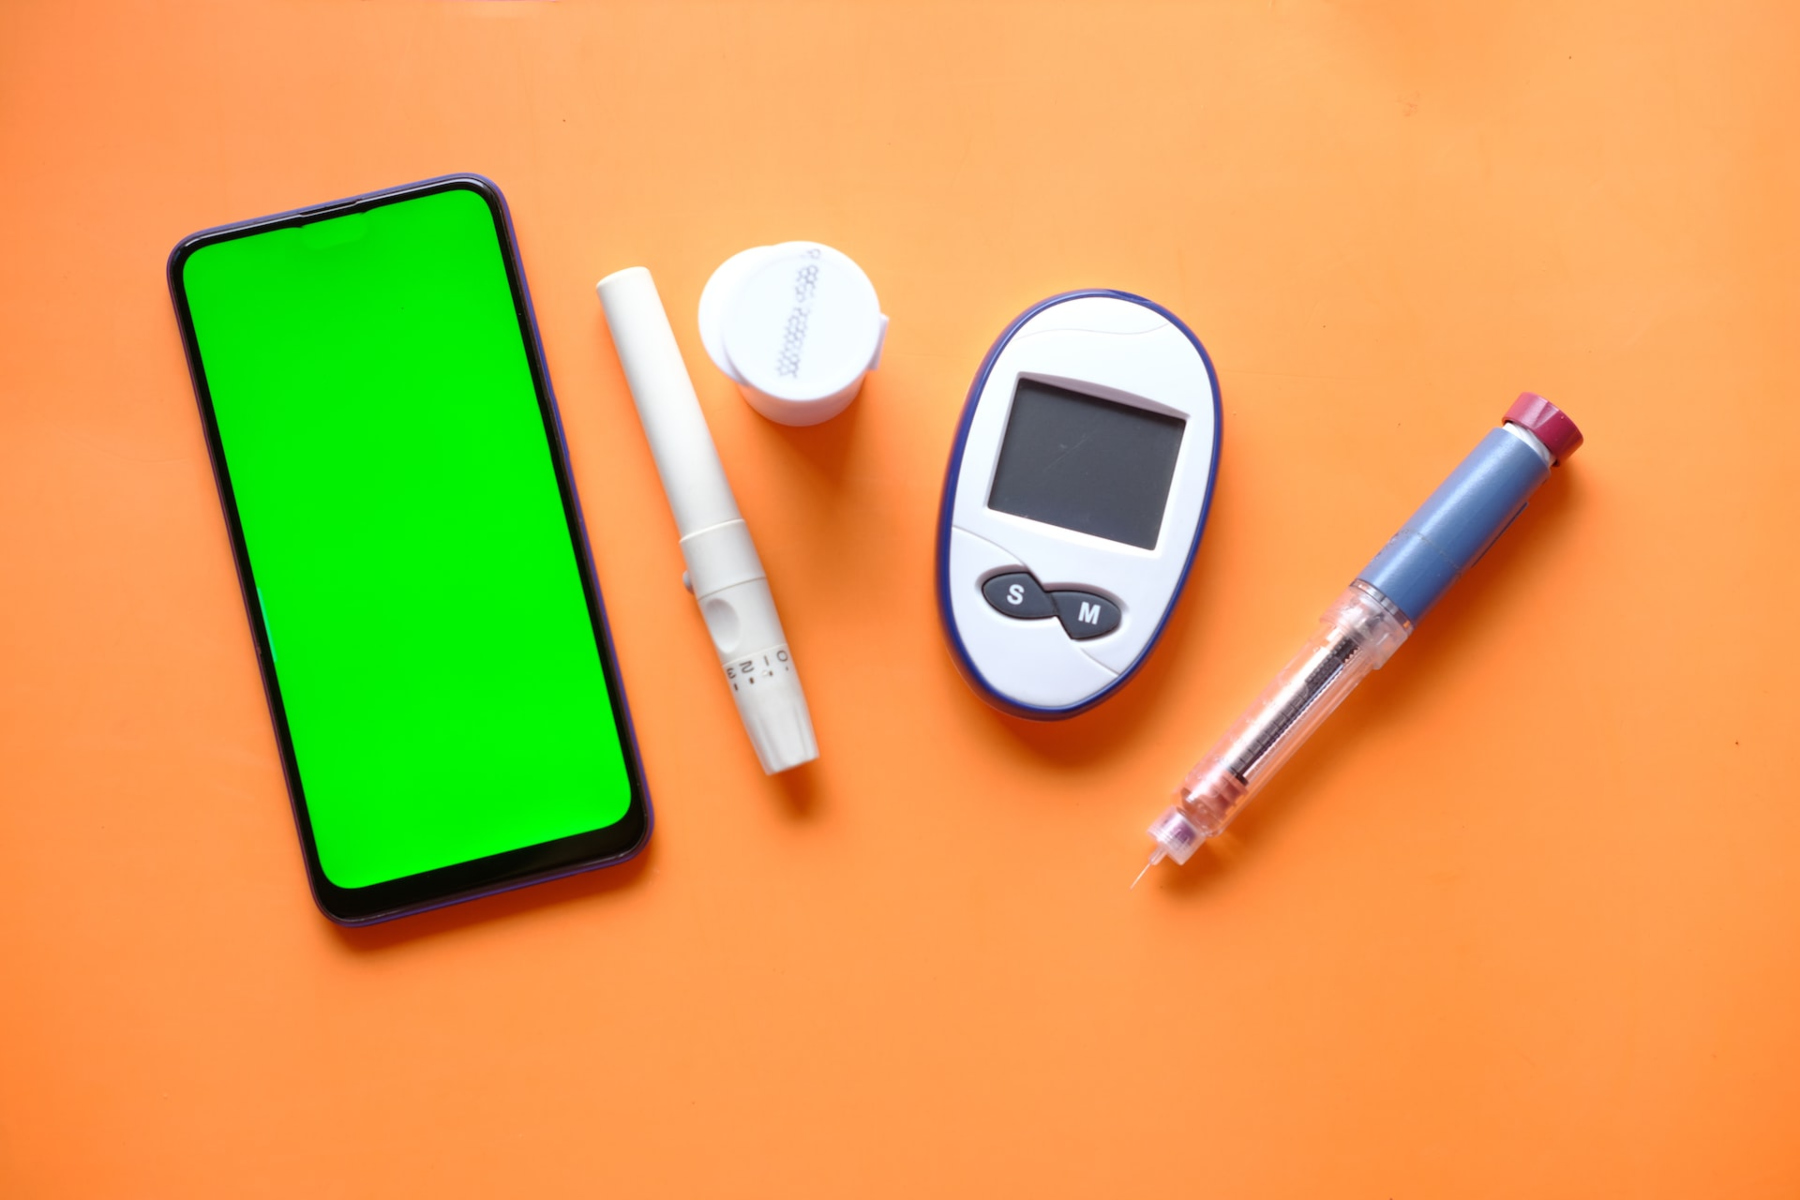 Ινσουλίνη: Ο Οργανισμός Τροφίμων και Φαρμάκων προειδοποιεί τα άτομα που χρησιμοποιούν αντλία ινσουλίνης